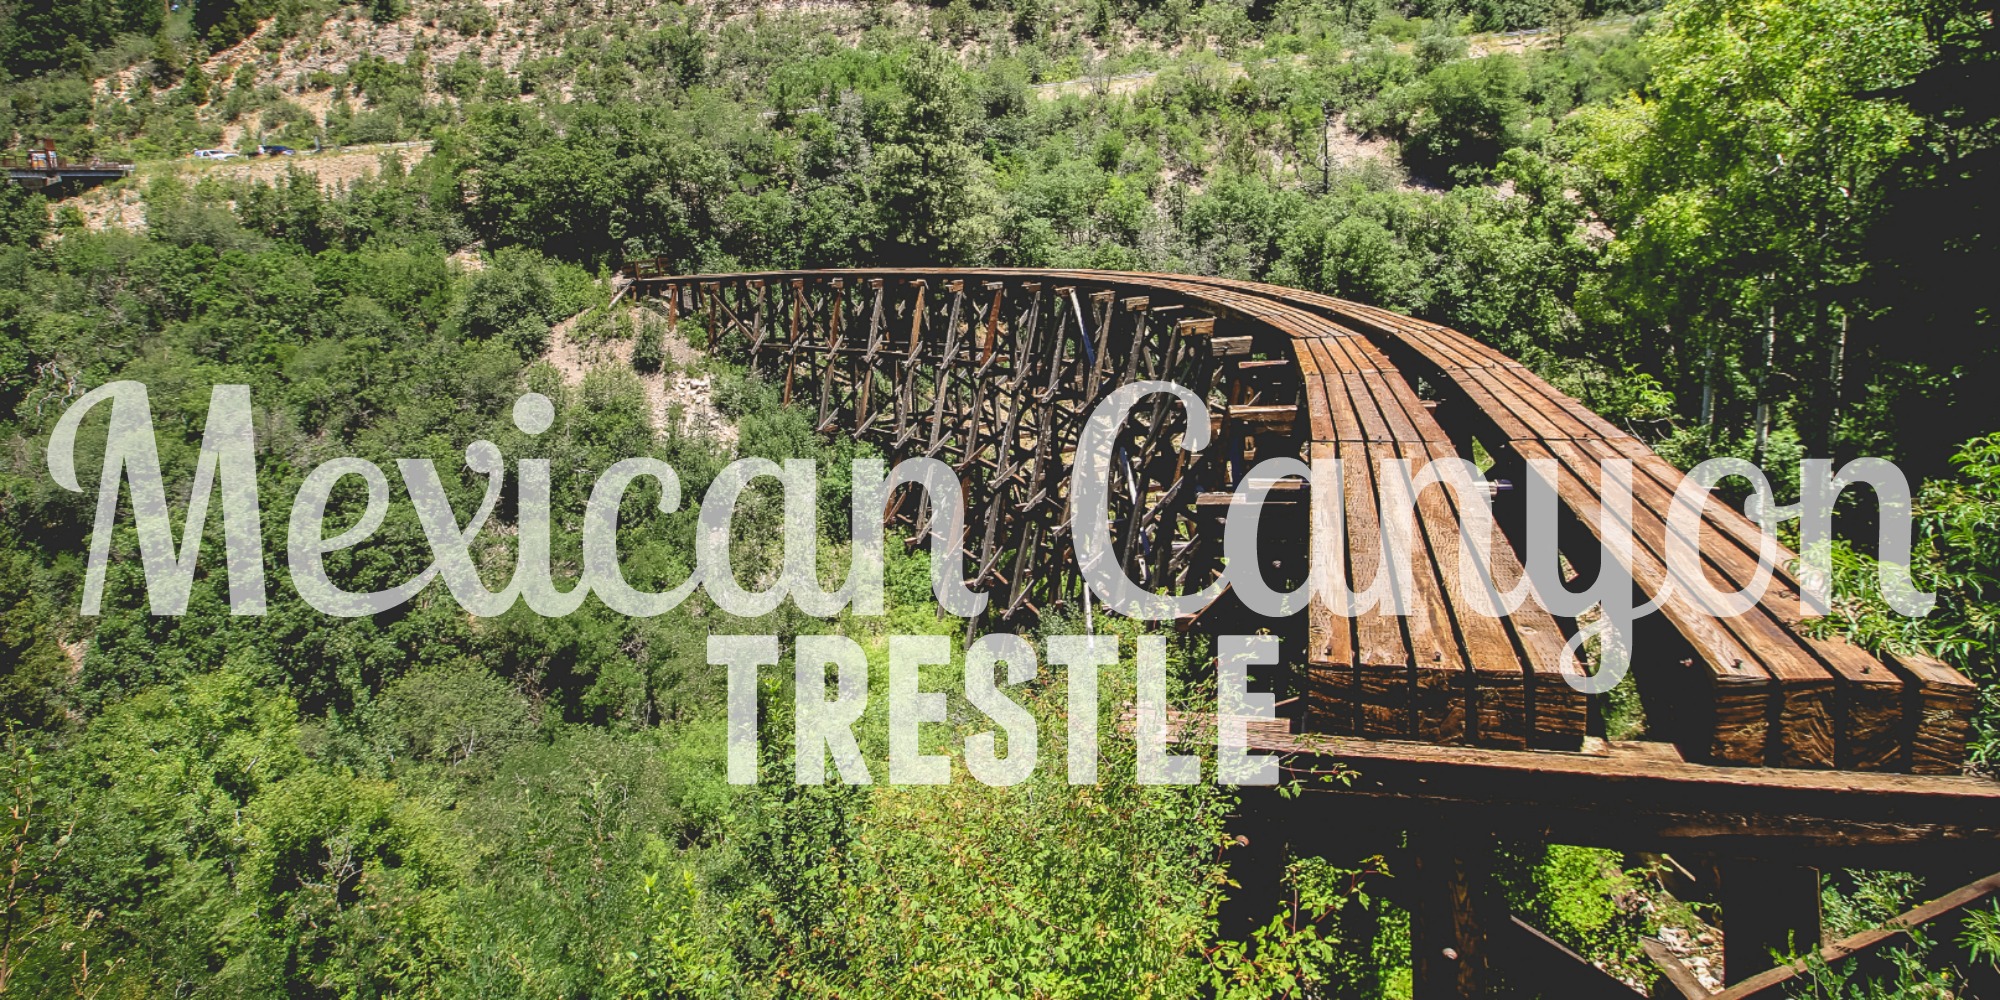 Mexican Canyon Trestle